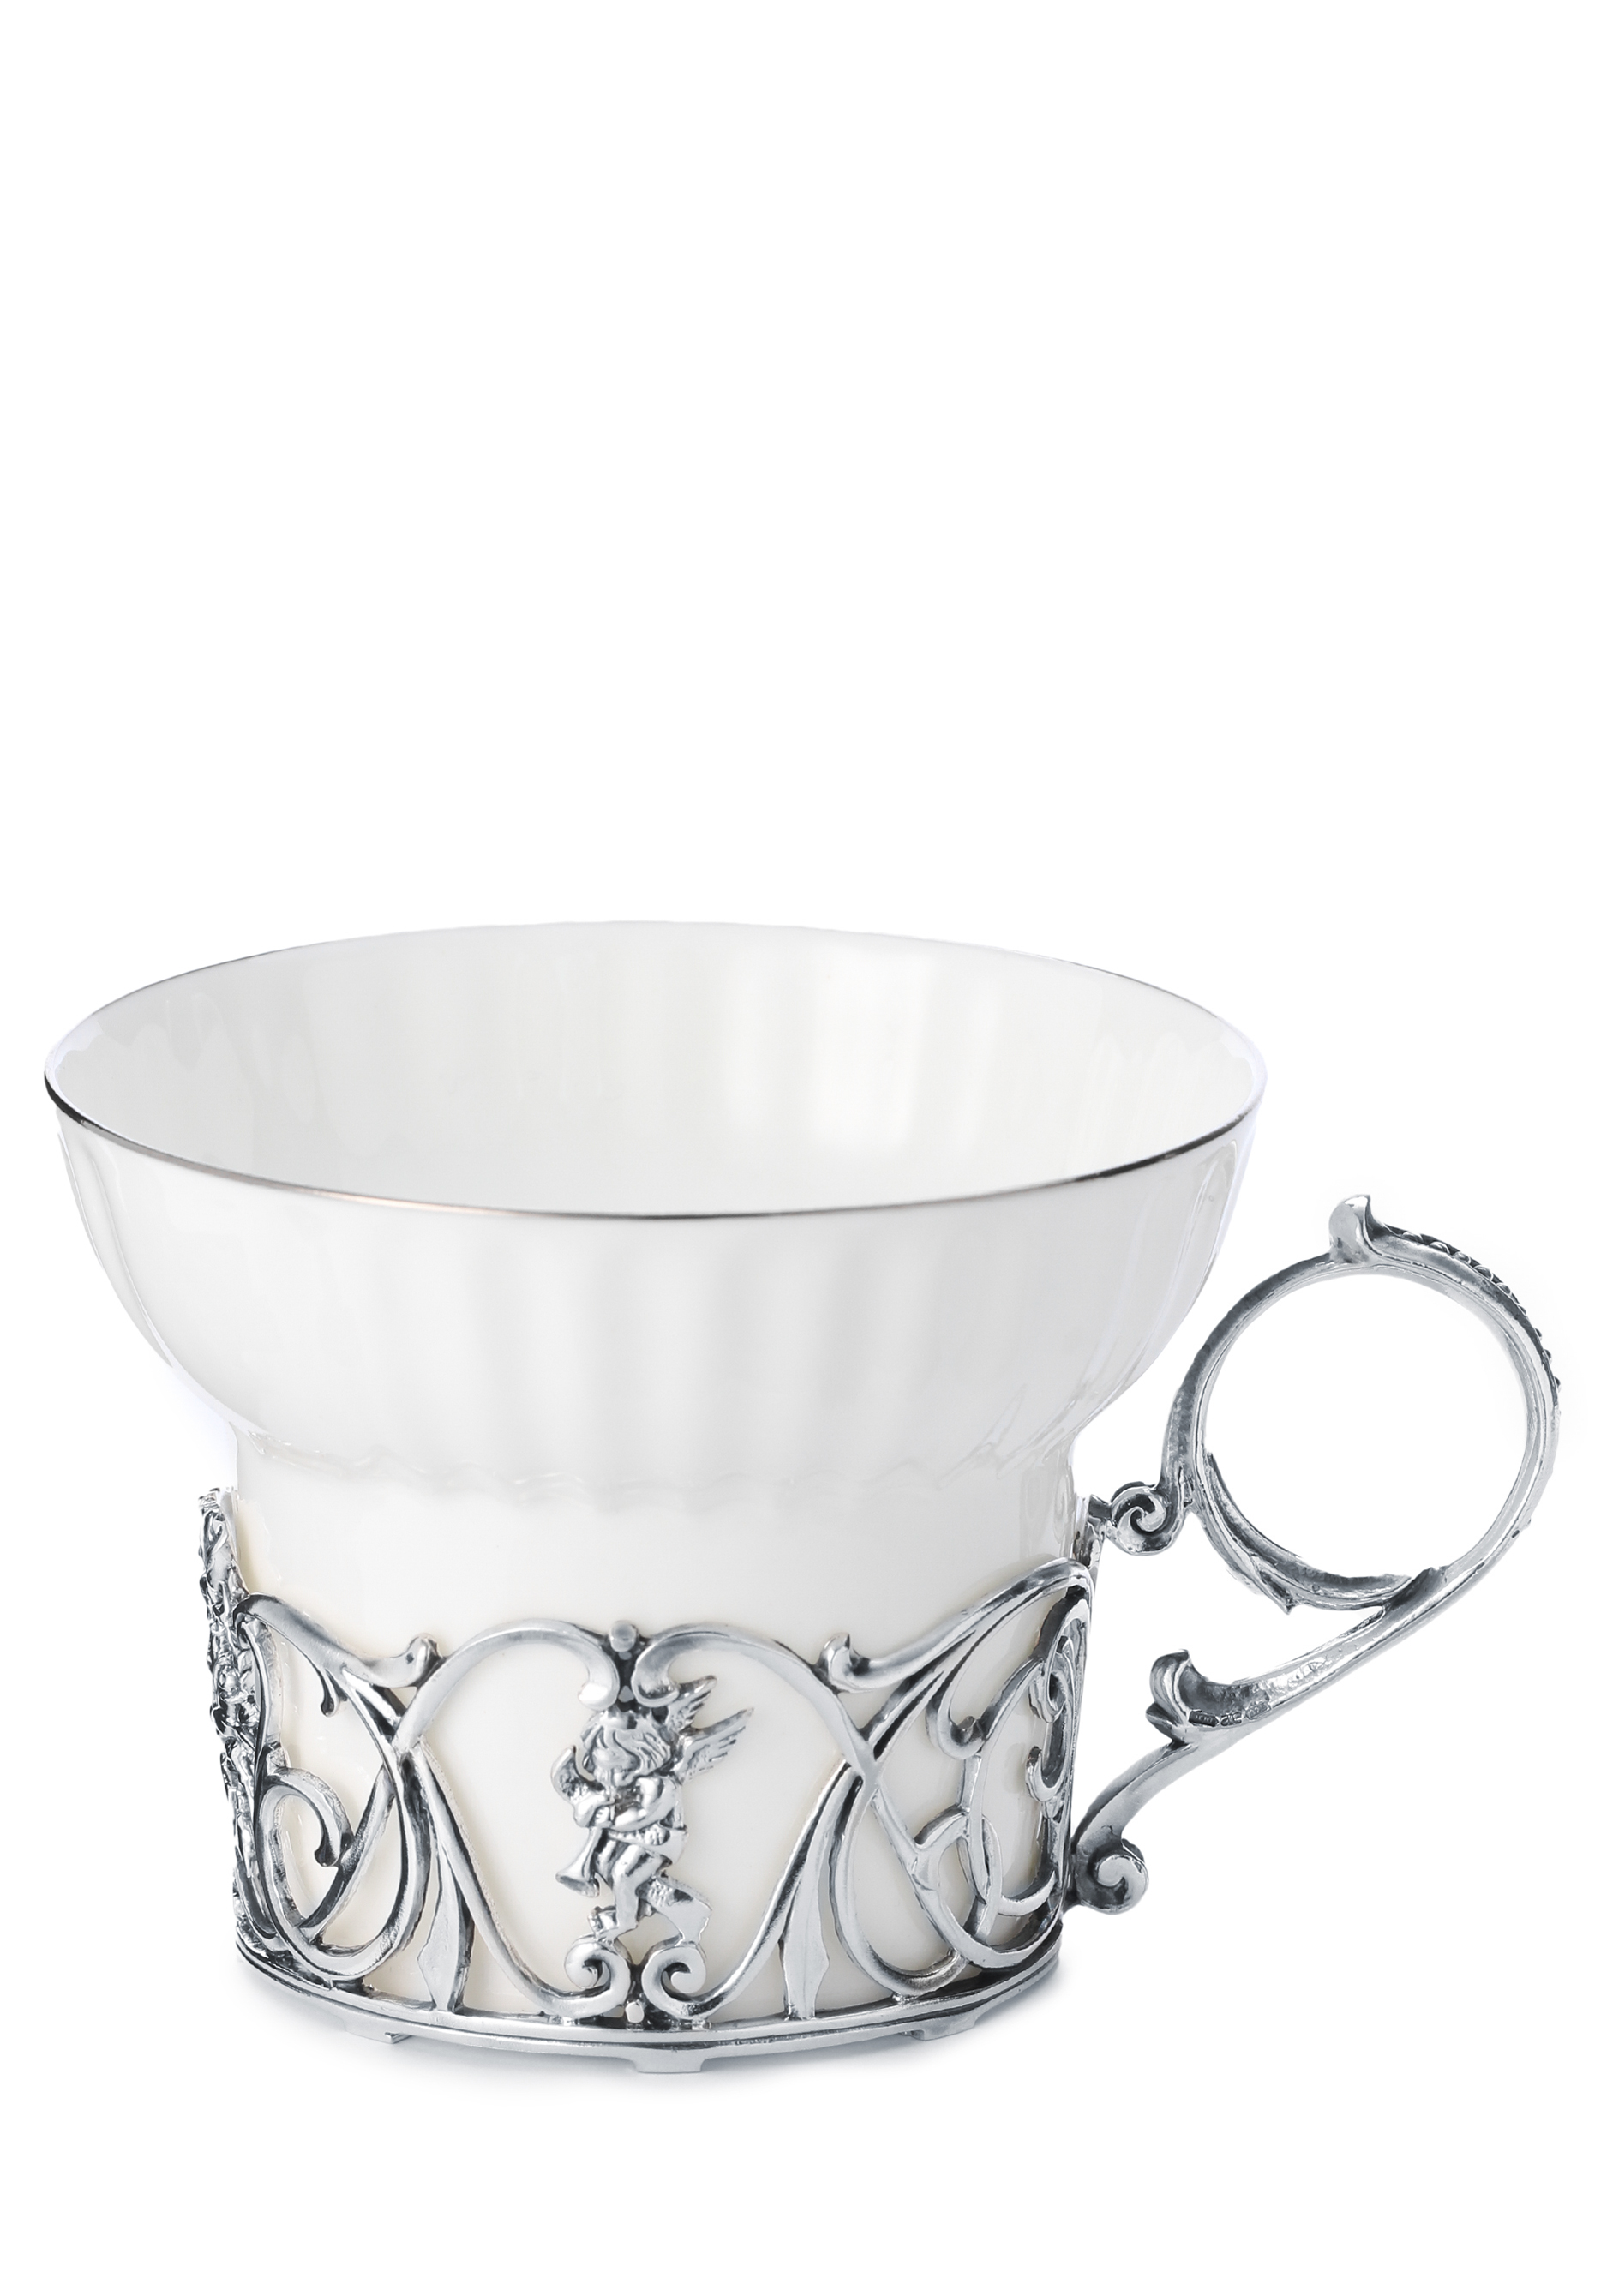 Чайная чашка Ангел фарфор, серебро чашка чайная из янтаря императрица с ложкой серебро